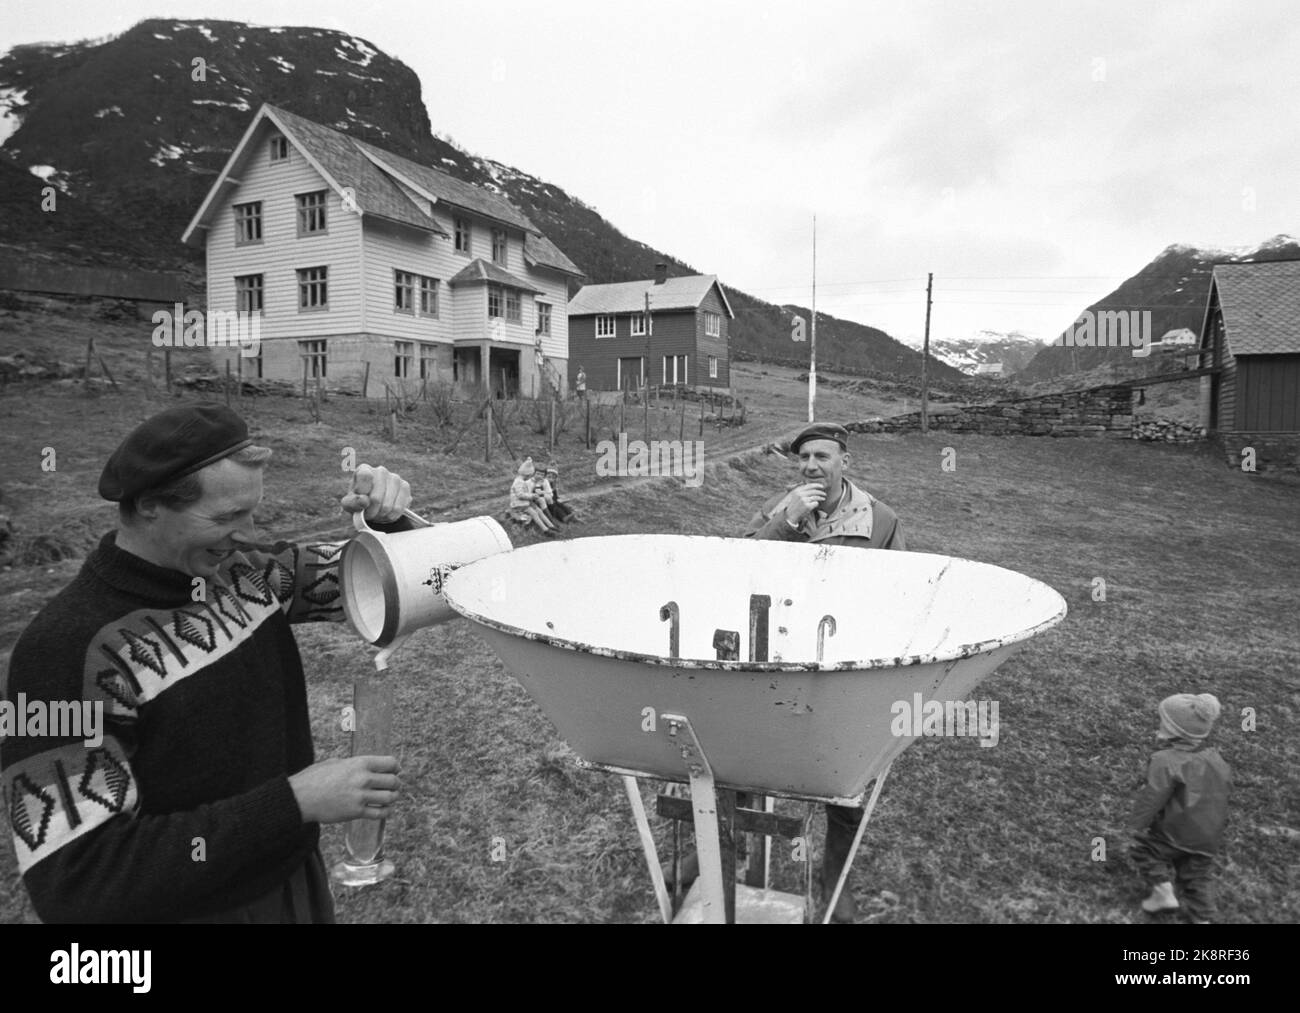 Masfjorden 25 maggio 1963. Tutto il latte norvegese che è stato controllato nel corso dell'ultimo anno è radioattivo. Le esplosioni nucleari su Novaja Semlja hanno diffuso così tanta polvere radioattiva nell'atmosfera che colpisce tutti noi - non è stata ancora rilevata alcuna eccezione. Le persone nel Masfjord sono due volte più radioattive dei Bergens, che a loro volta sono da tre a quattro volte radioattive delle persone di Oslo; è collegato alla quantità di precipitazioni. Sulla fattoria Haukeland, 3400 mm di pioggia perm. Anno. Foto: Ivar Aaserud / corrente / NTB Foto Stock